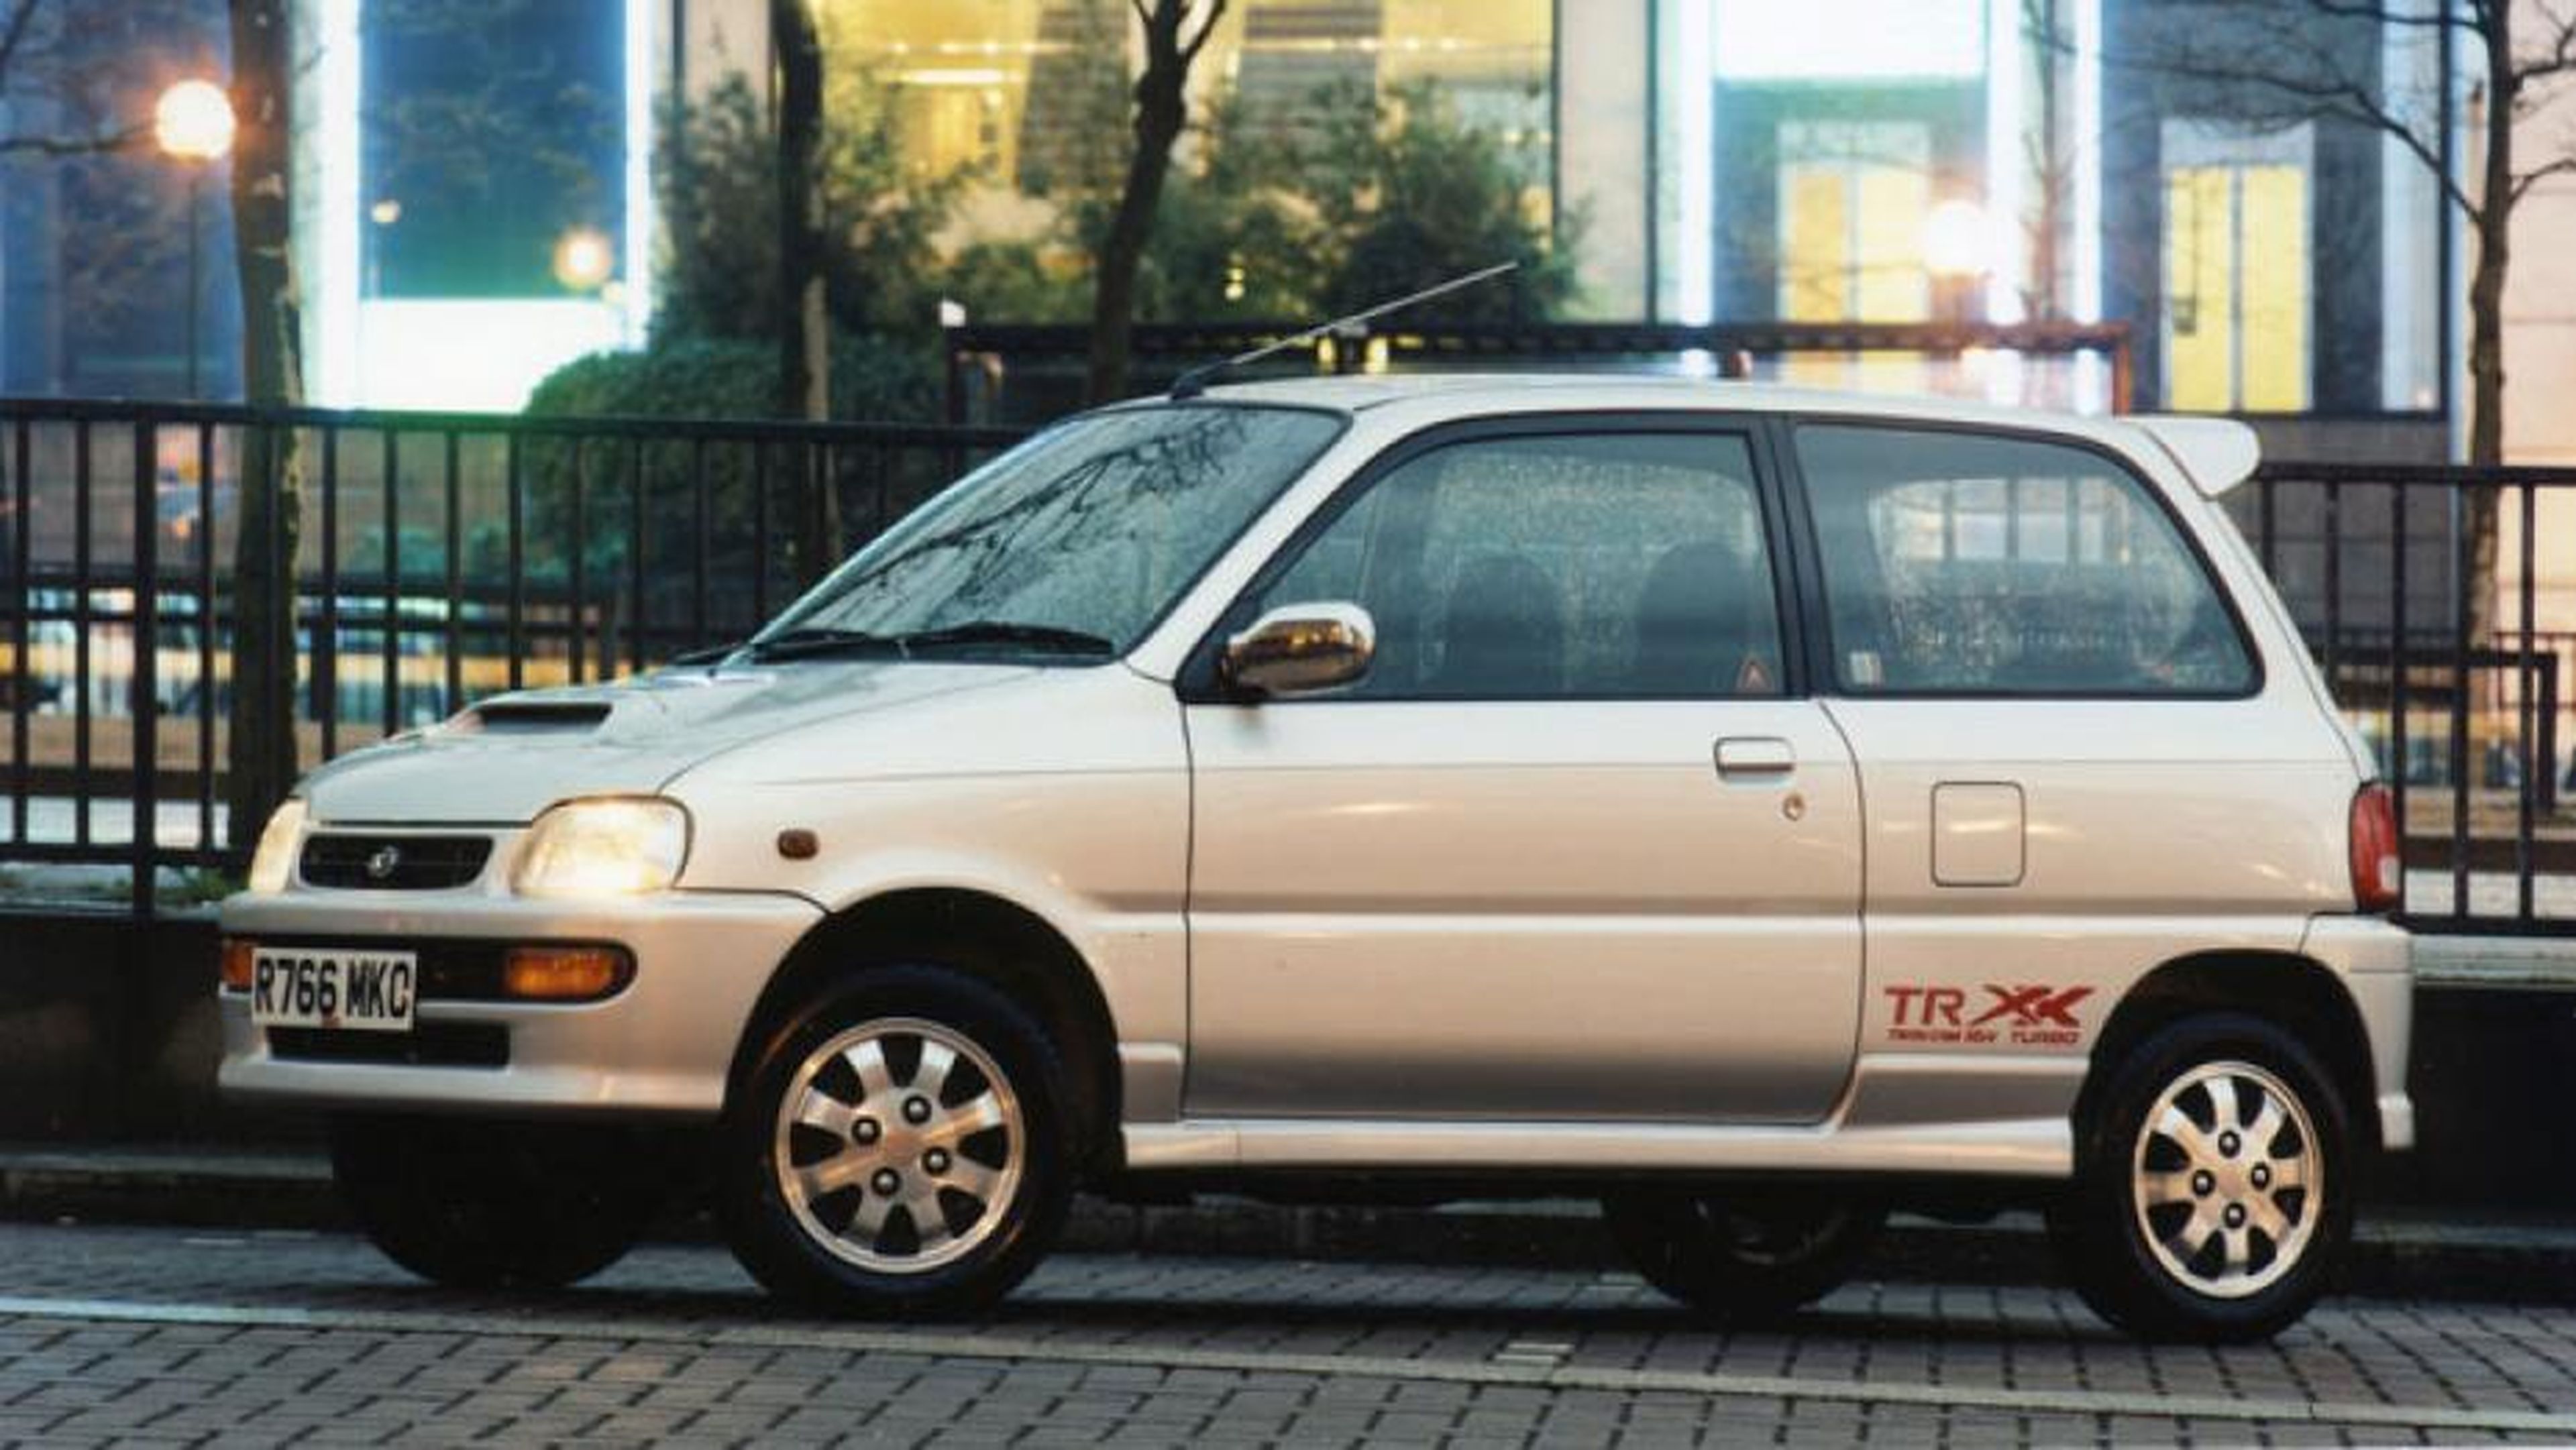 Daihatsu Cuore TR-XX Avanzato R